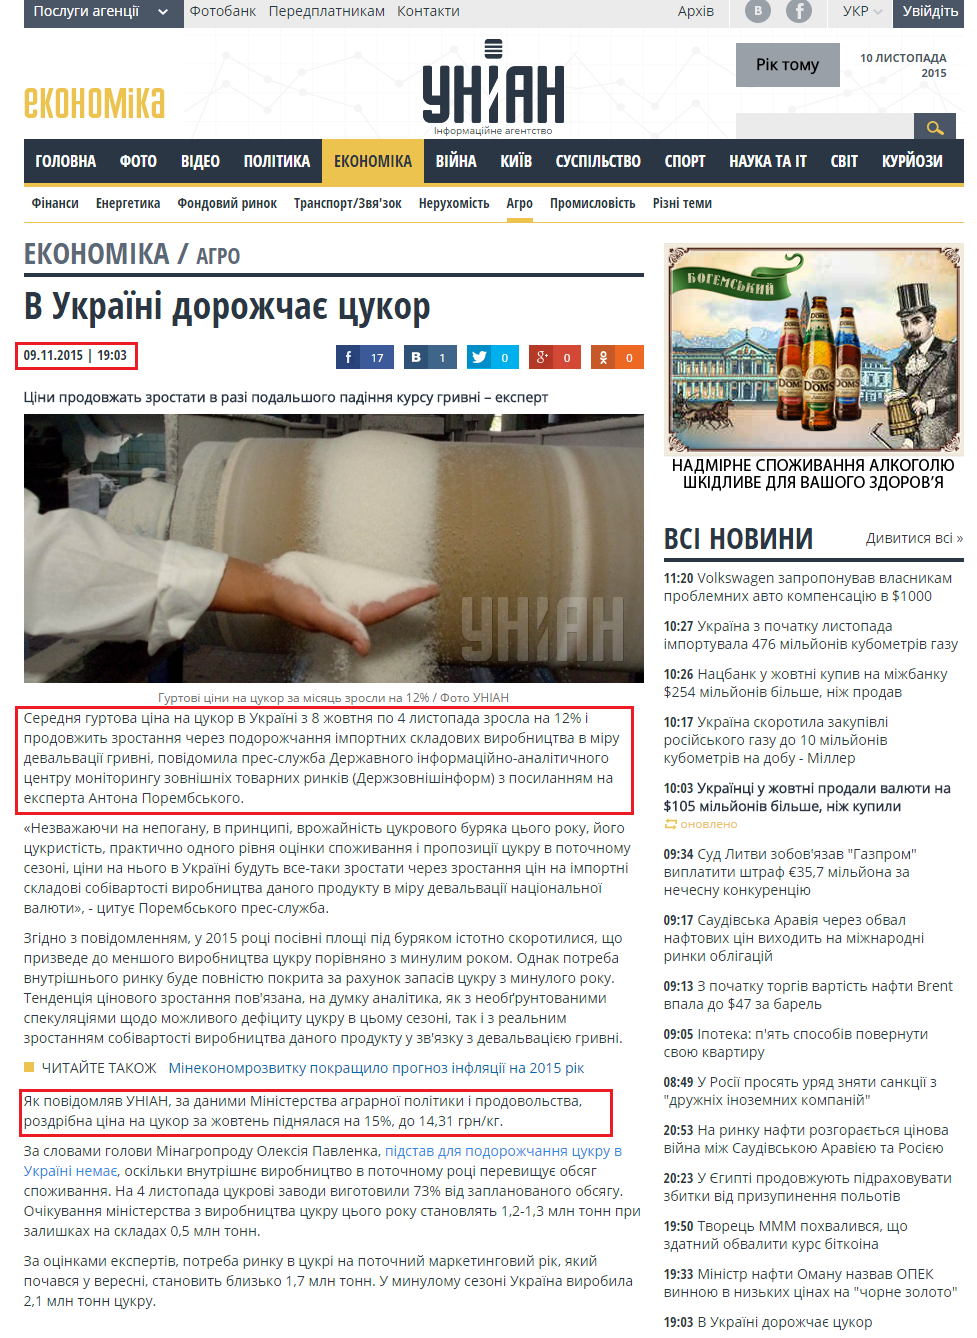 http://economics.unian.ua/agro/1178489-v-ukrajini-dorojchae-tsukor.html